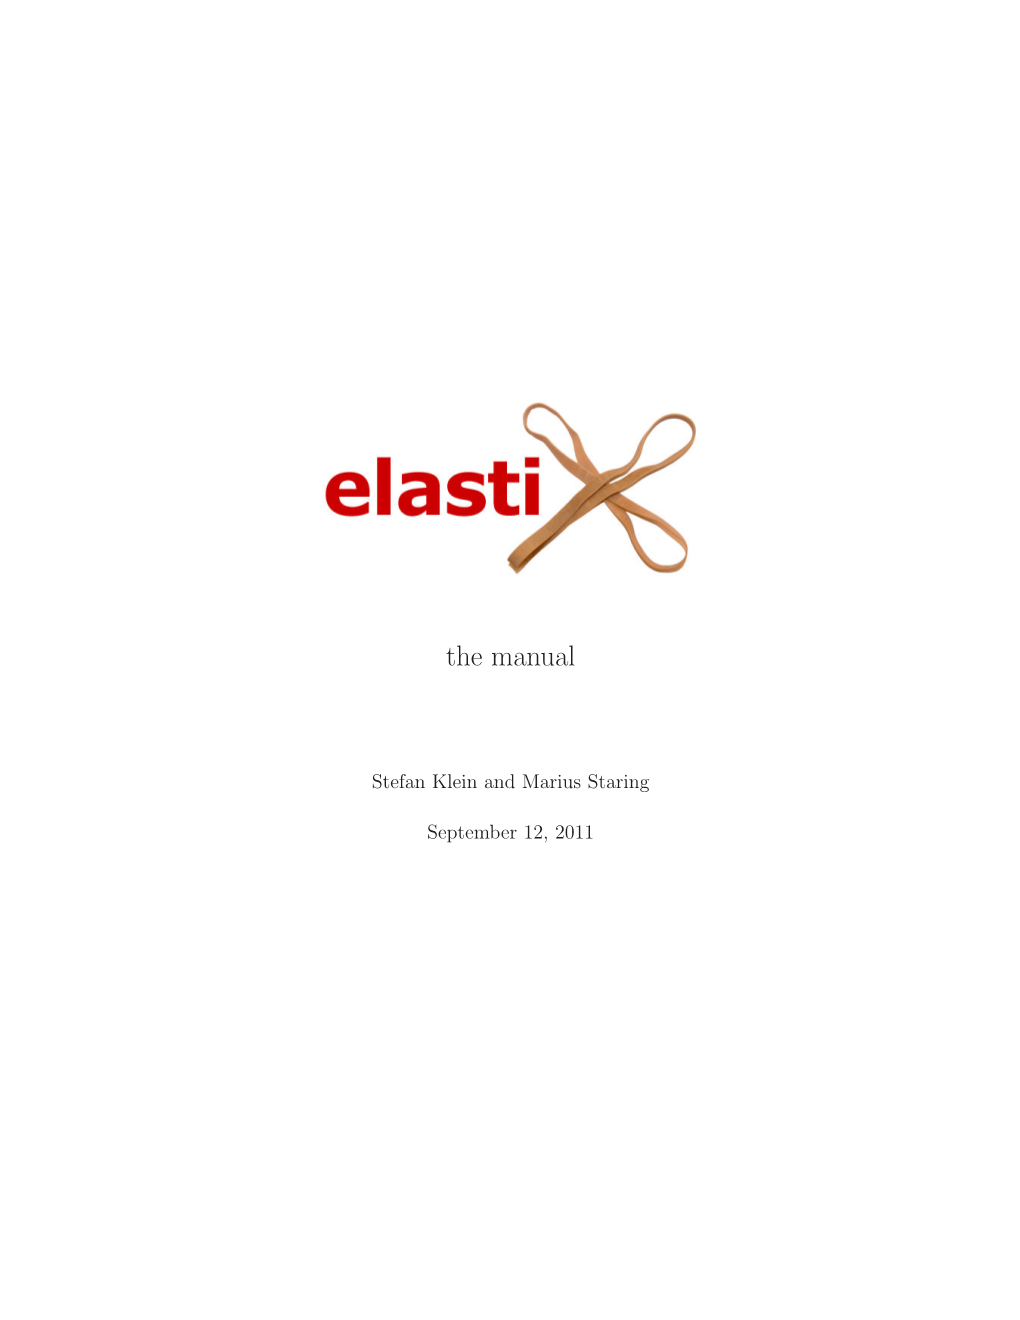 Elastix, the Manual